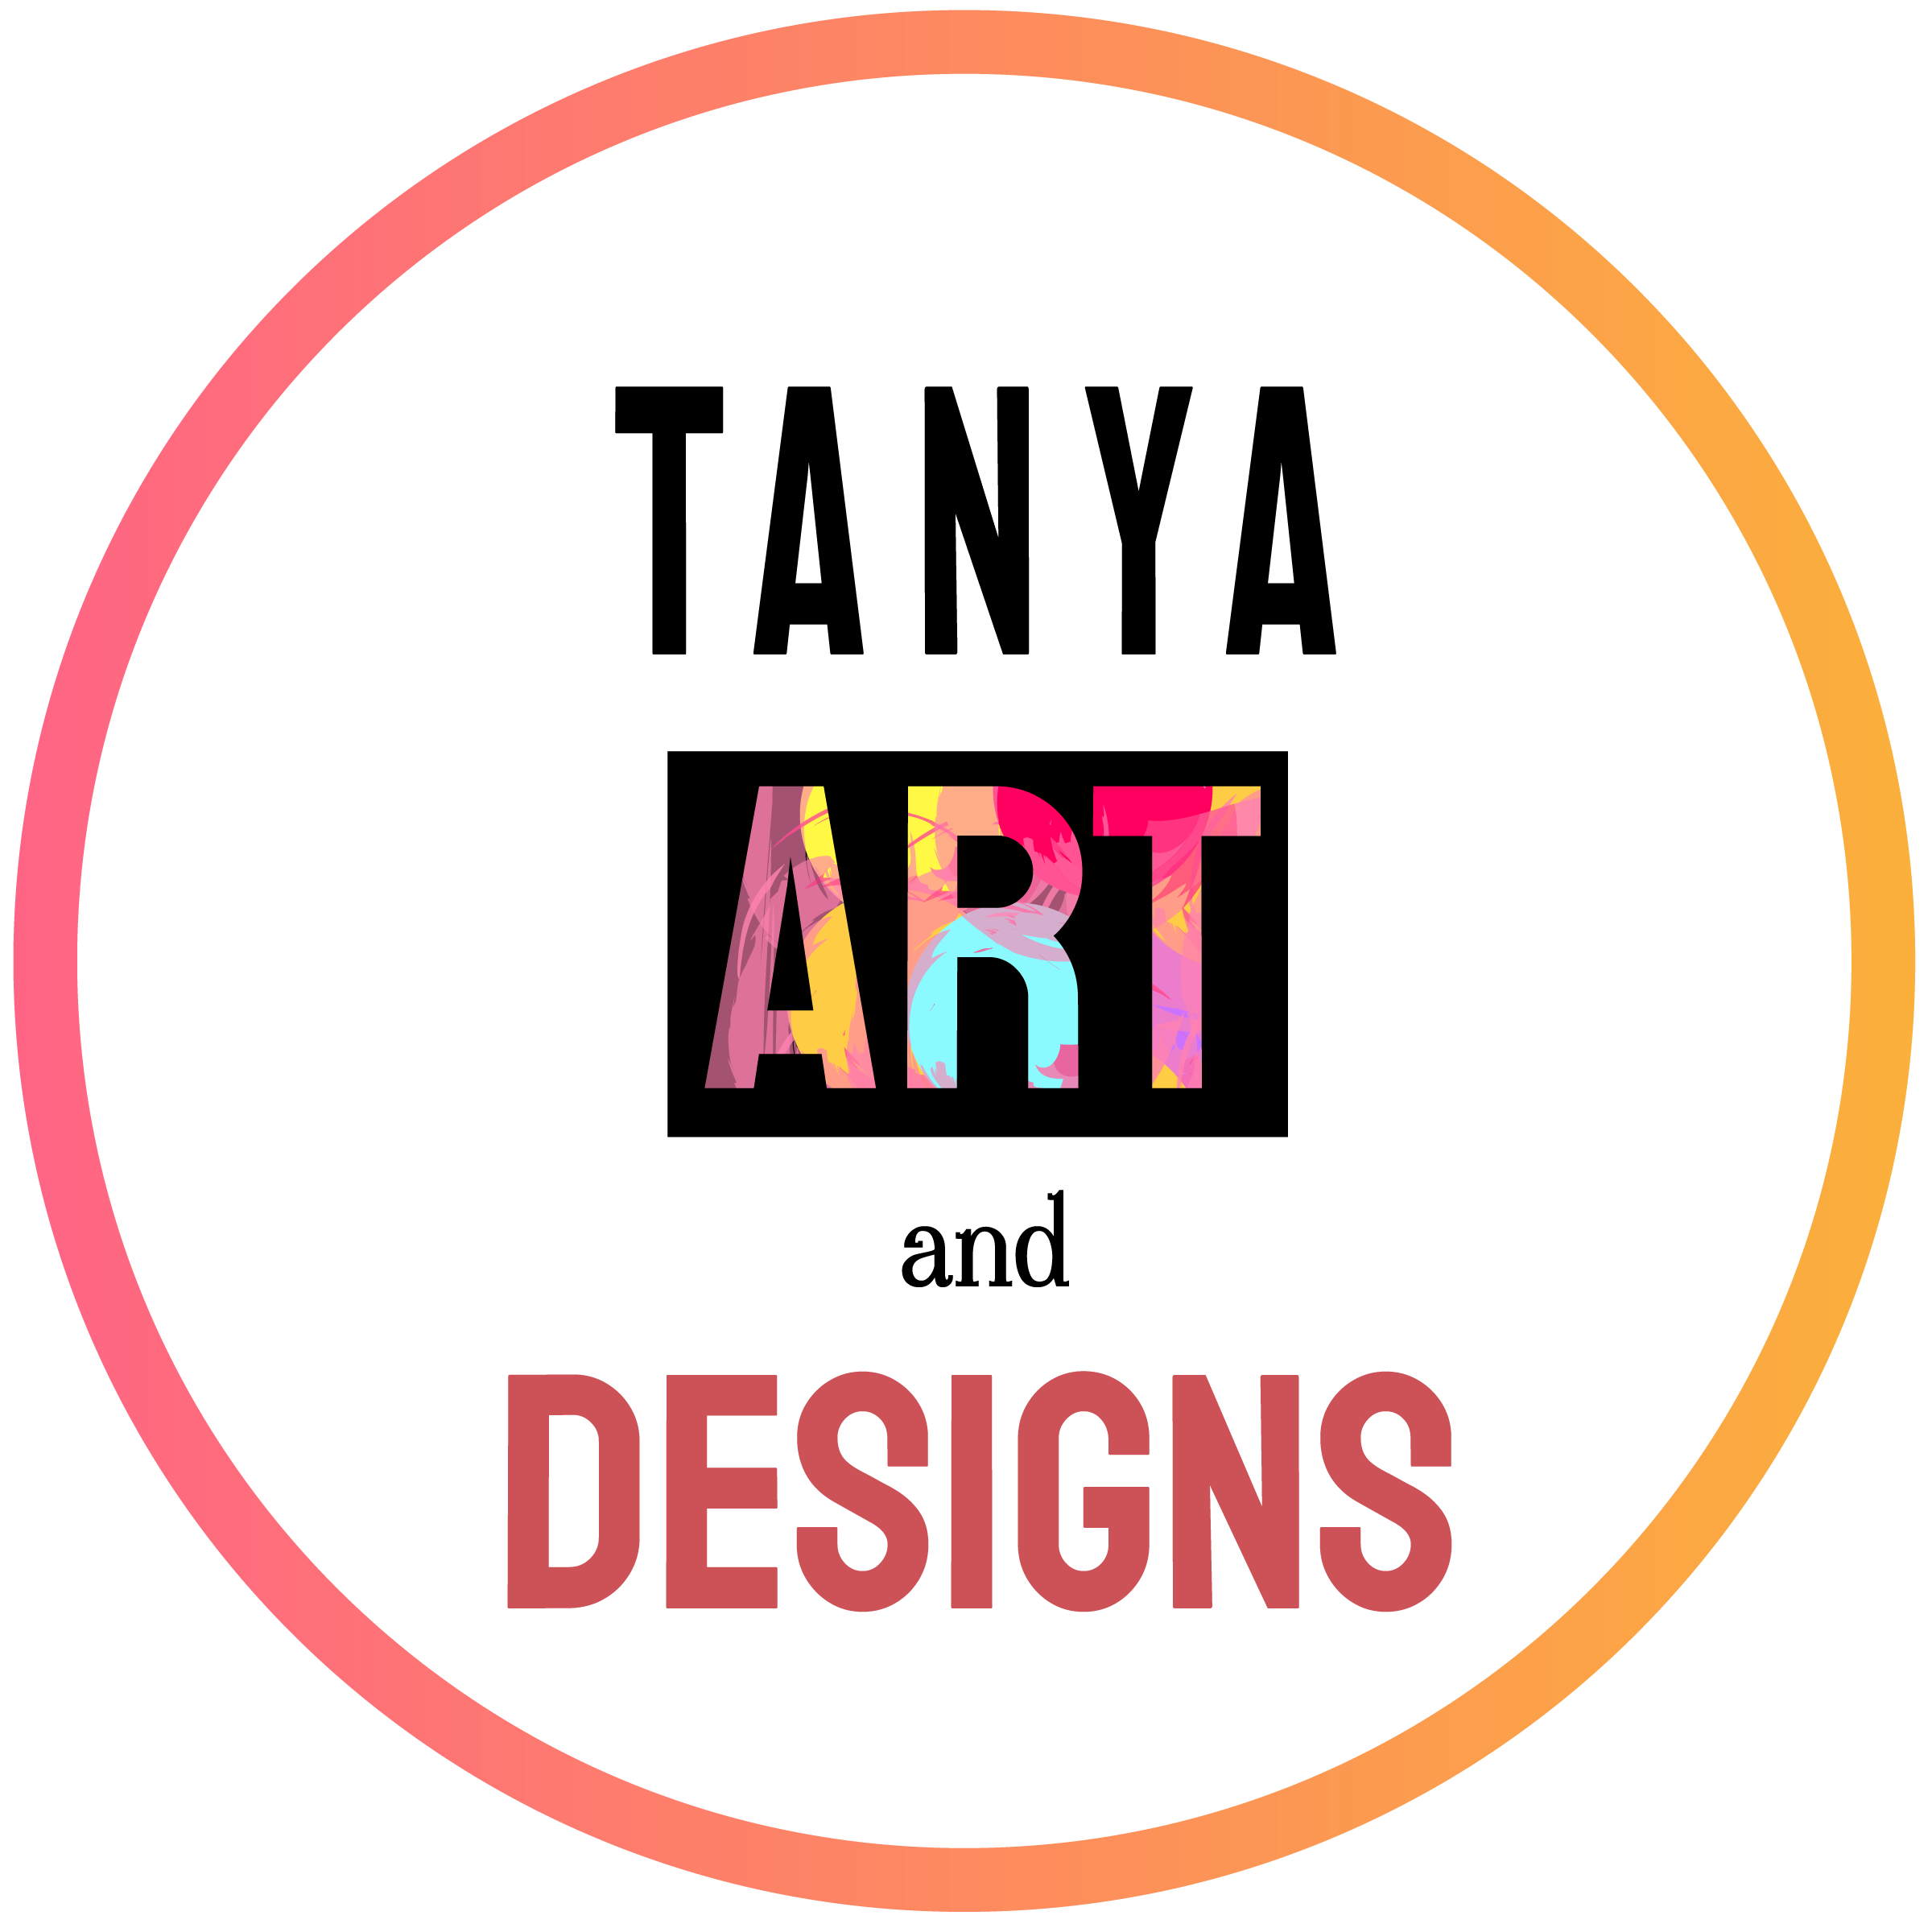 Tanya Art and Designs